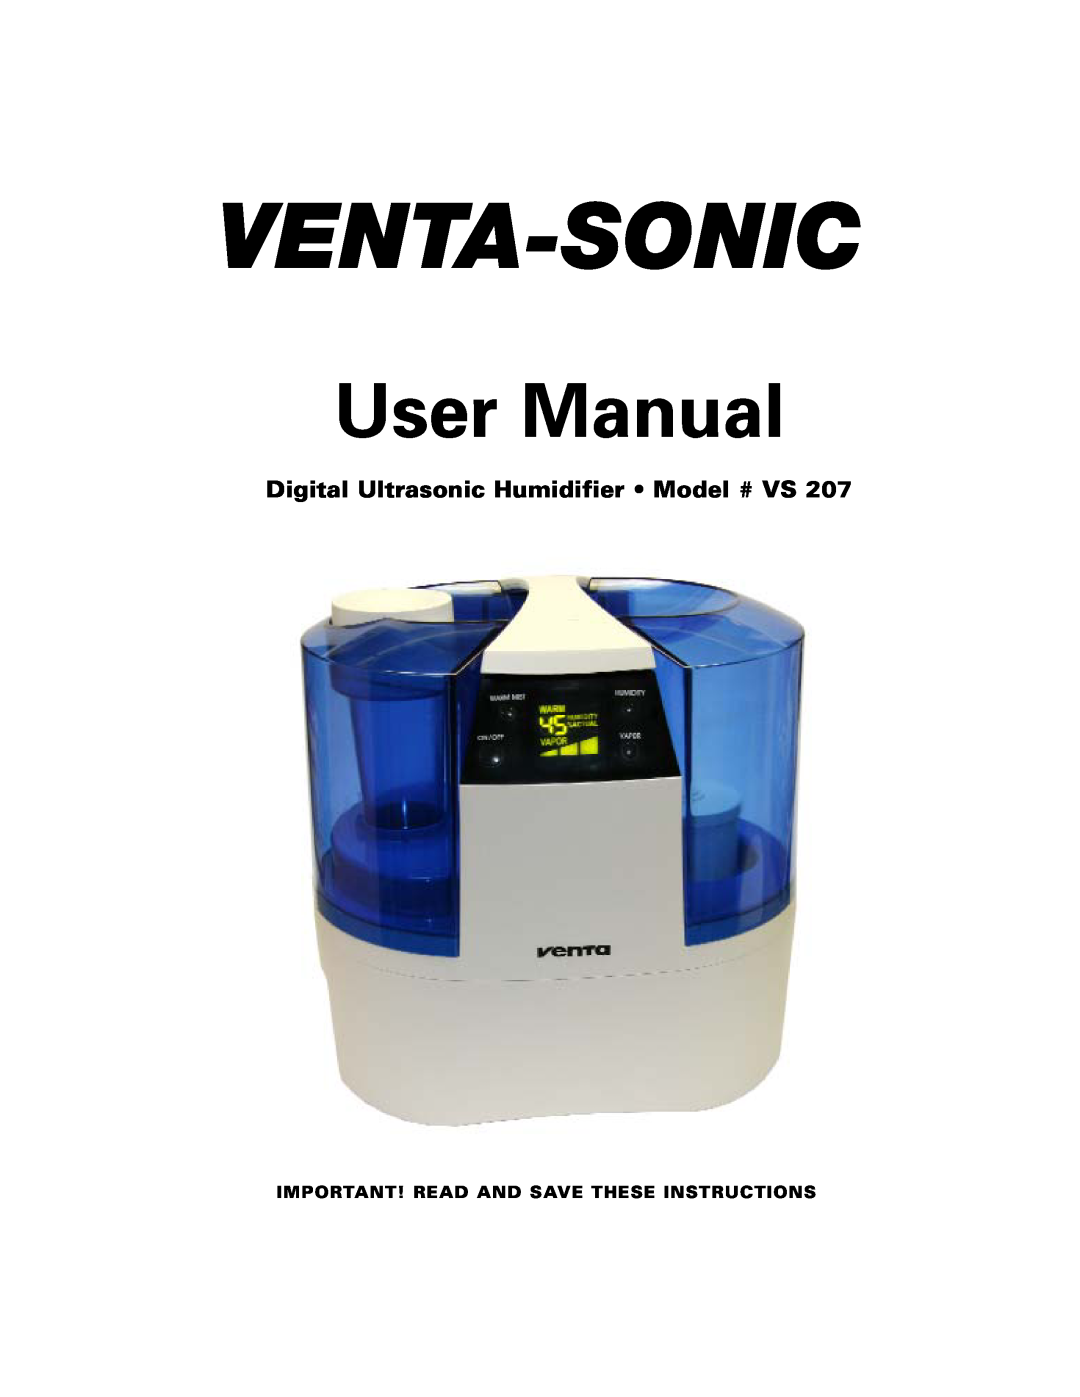 Venta Airwasher VS 207 user manual Venta-Sonic, Digital Ultrasonic Humidifier Model # VS 